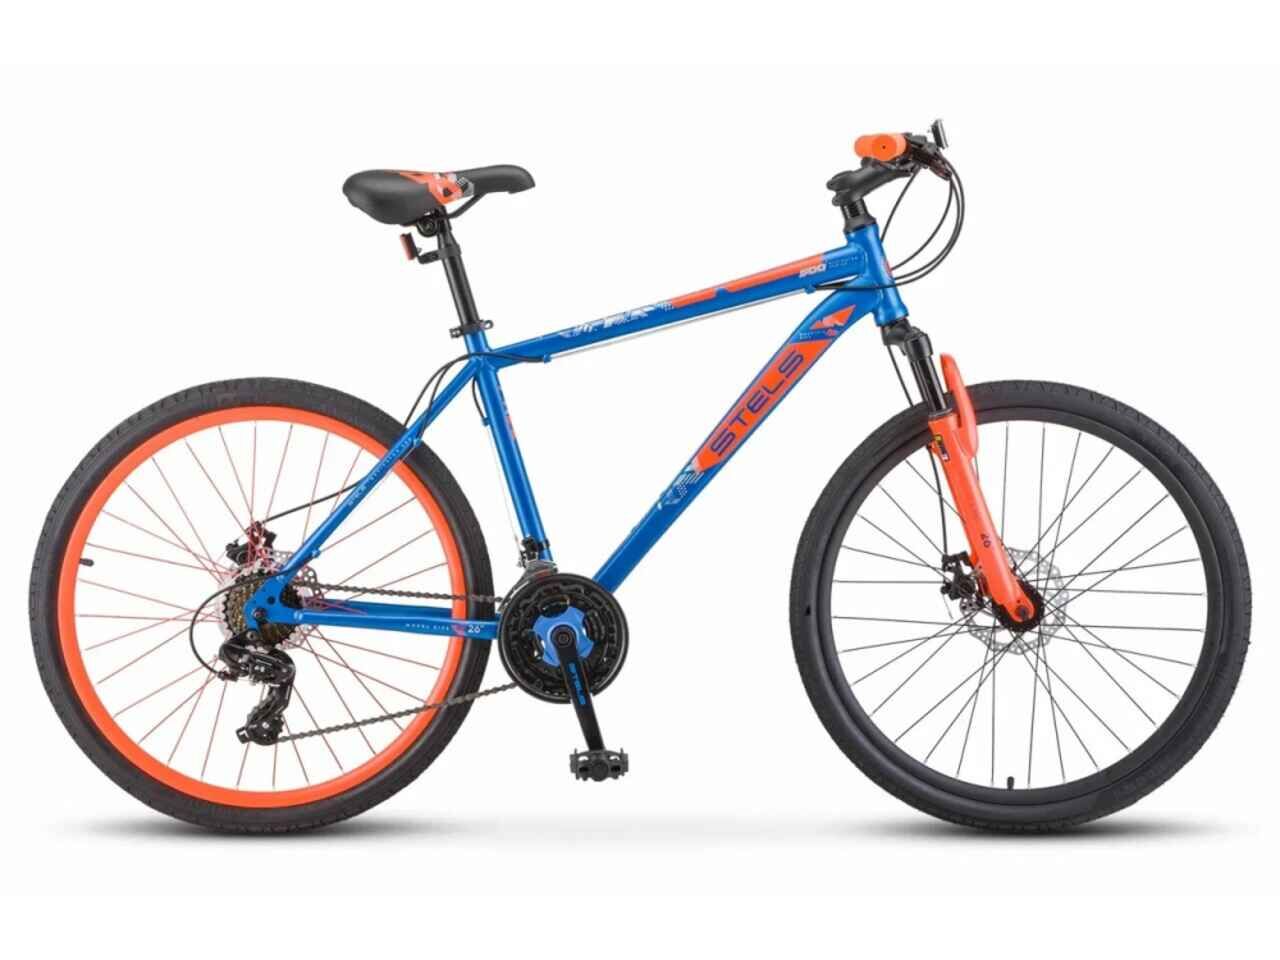 Велосипед Stels Navigator 500 MD 26 F020 (18, синий/красный, 2022)